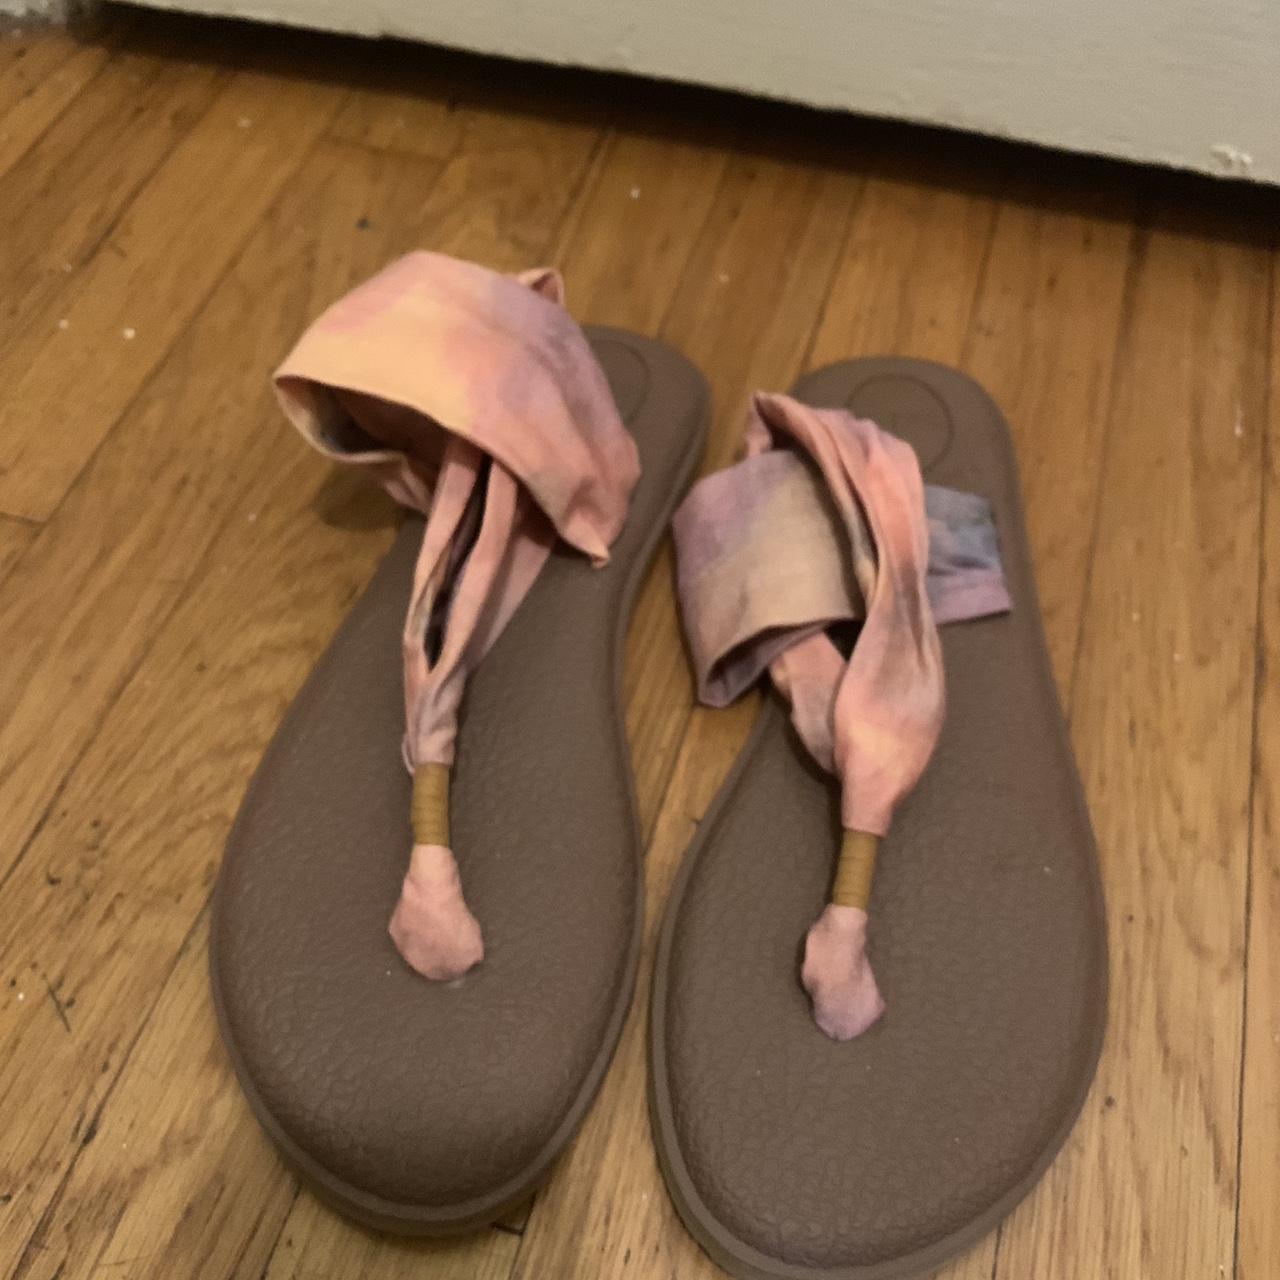 Sanuk yoga sling sandals size 10 (never worn) - Depop